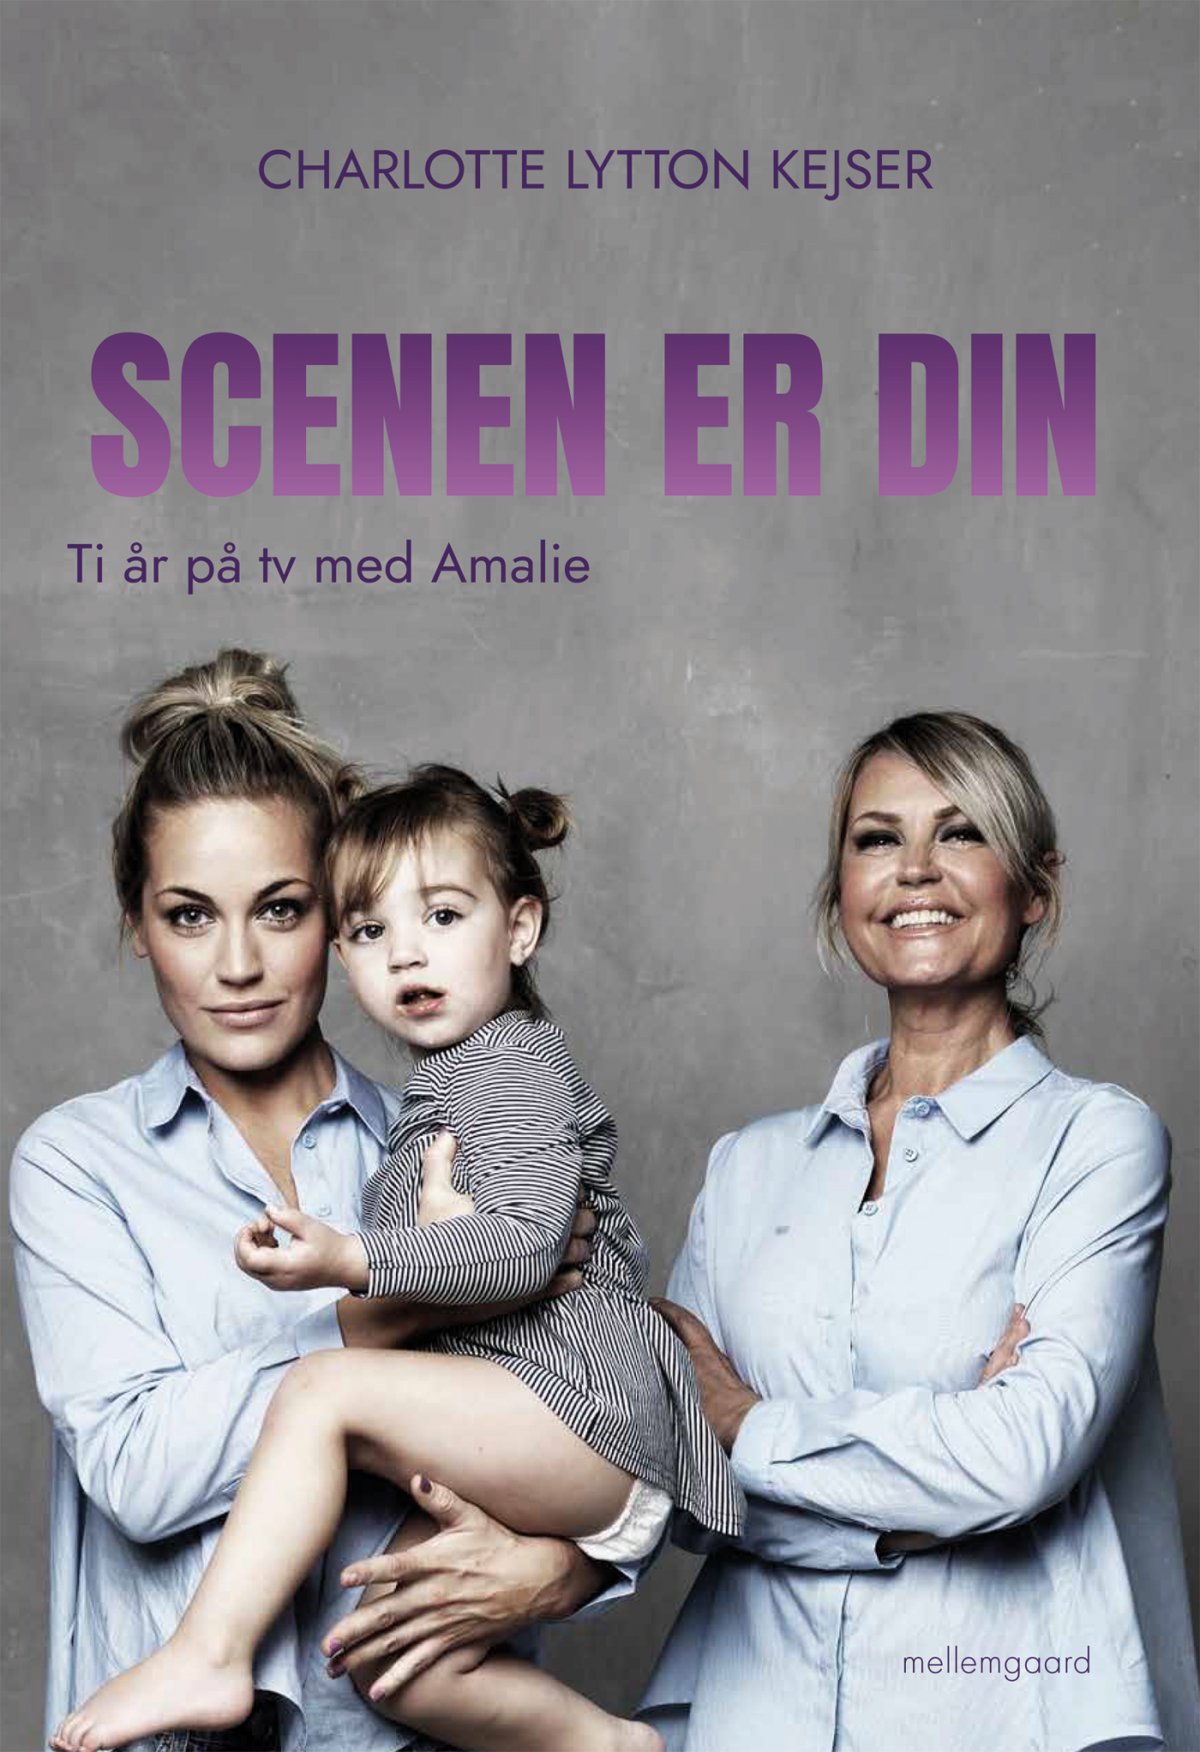 DIN - Ti år på tv med Amalie - Biografier og erindringer - mellemgaard